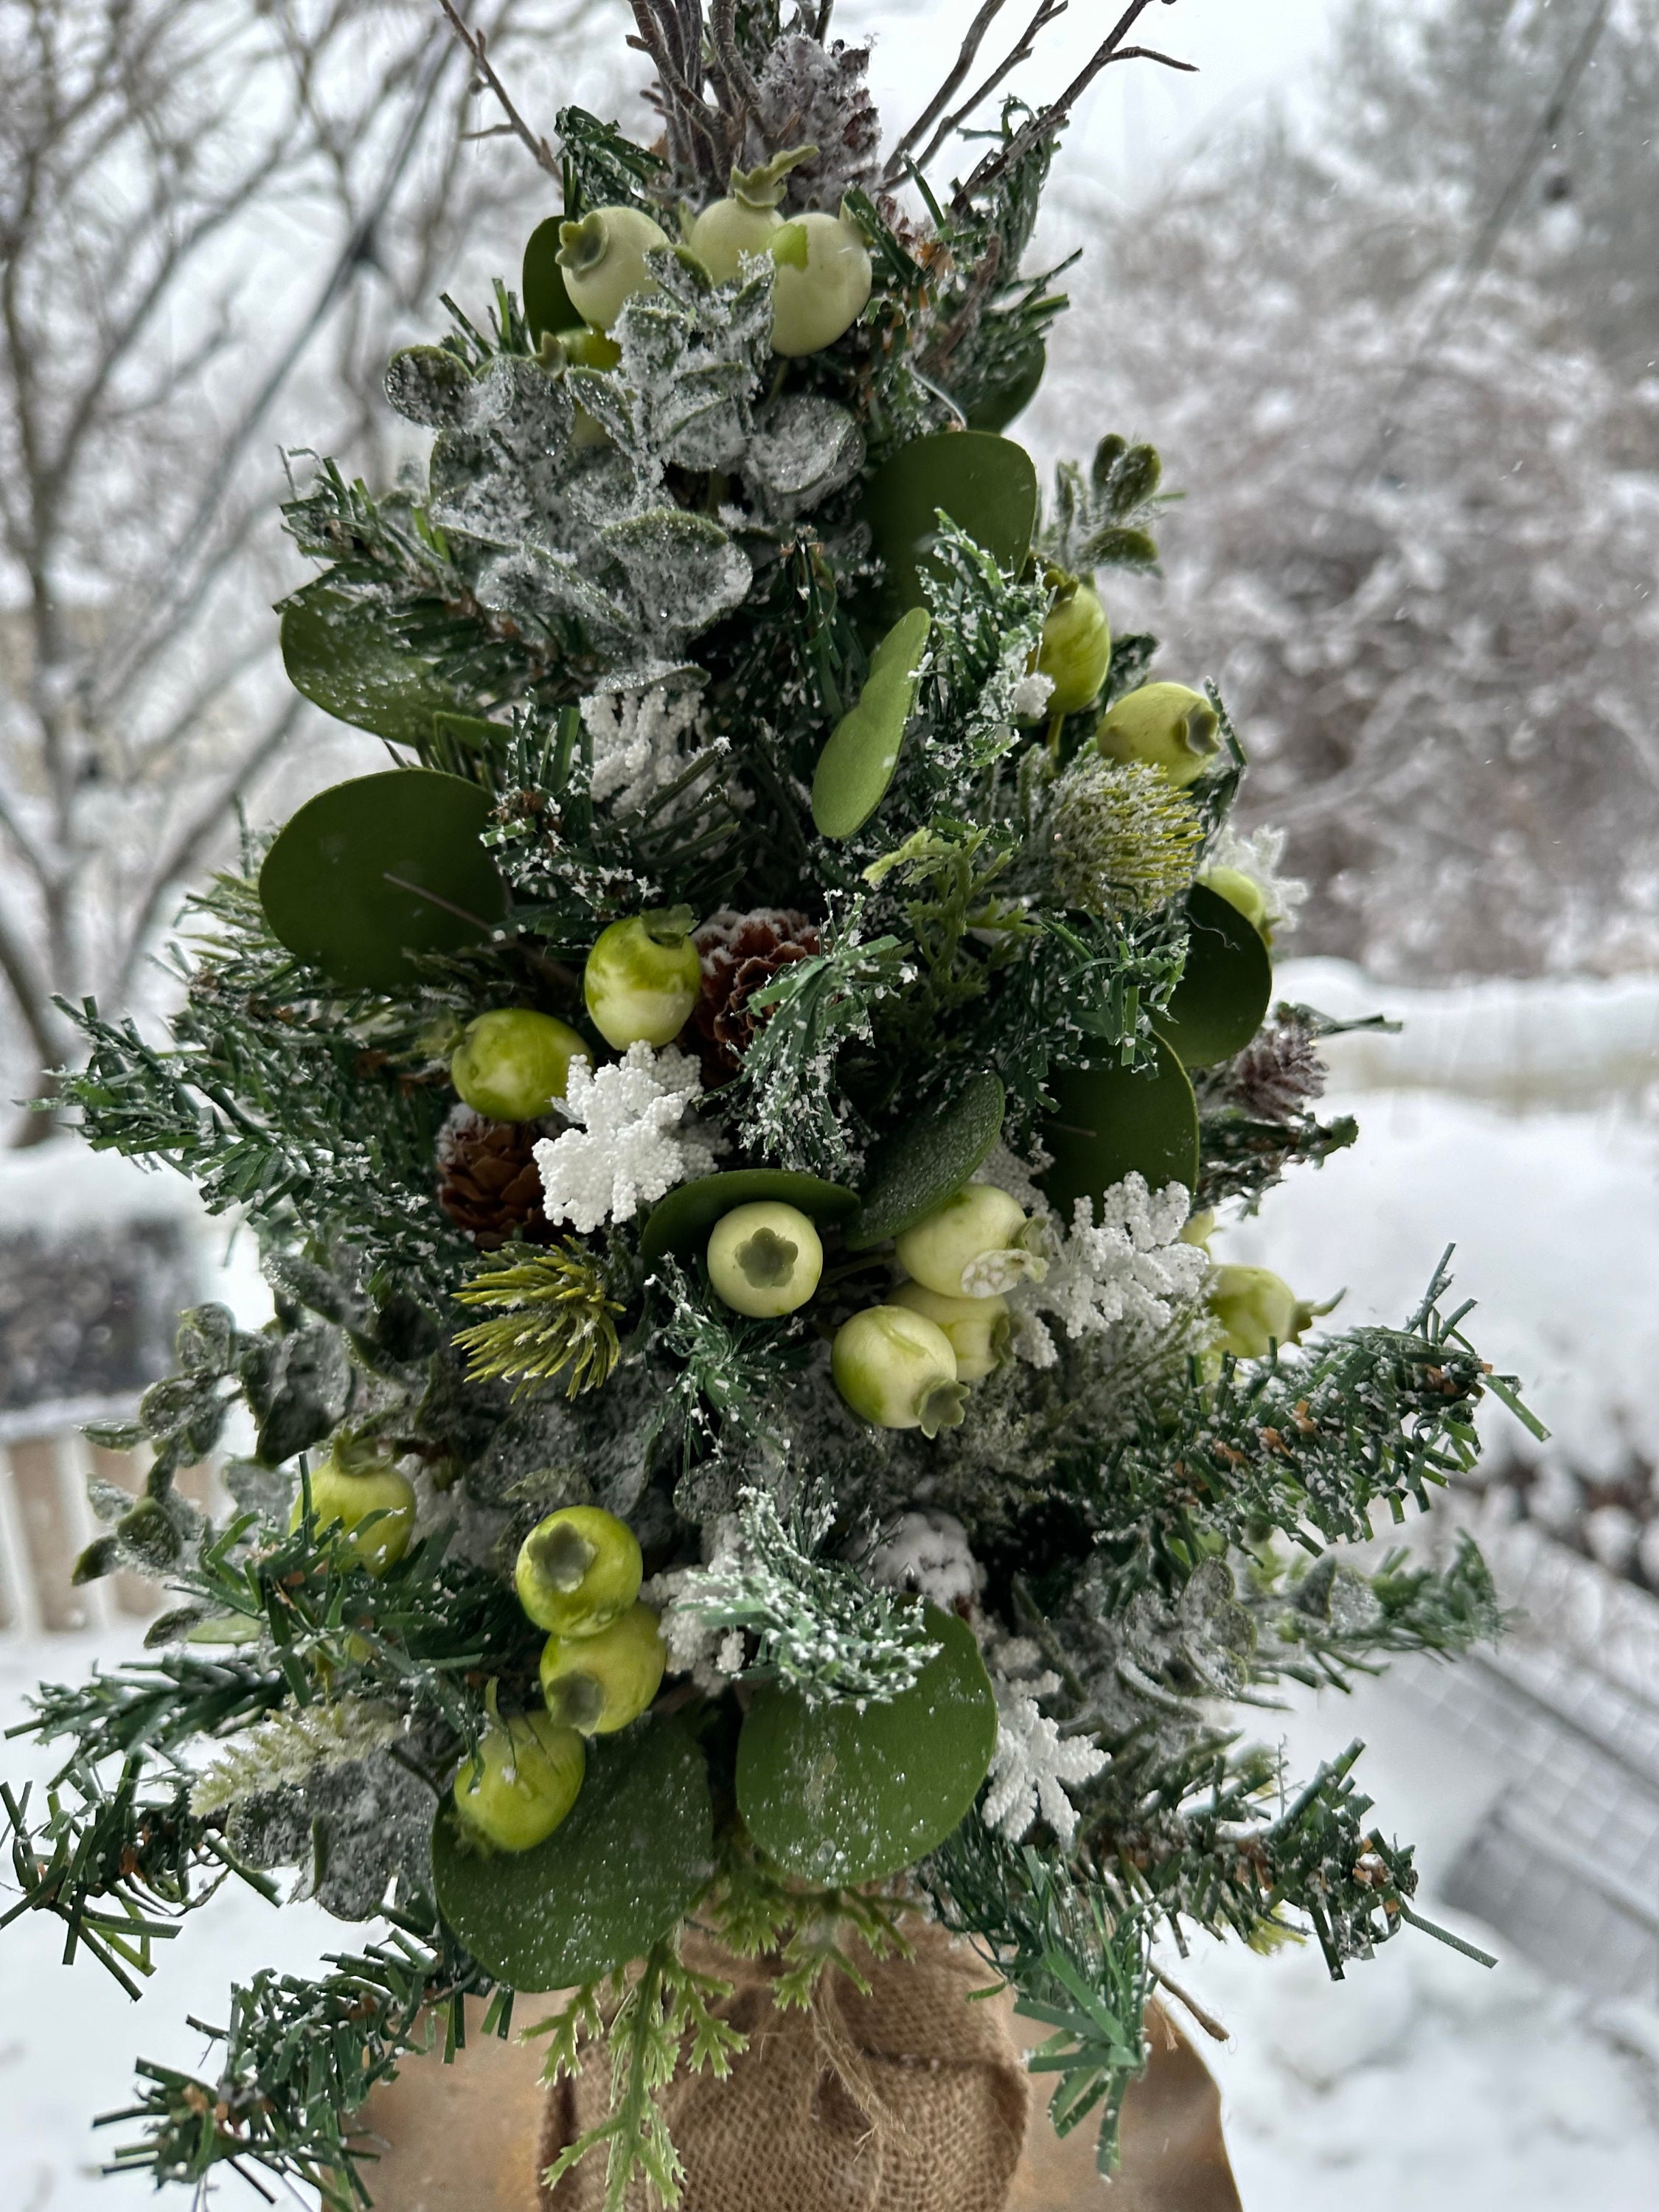 Decoración de nieve falsa para manualidades navideñas, polvo de nieve  Artificial, copos de nieve de plástico, exhibición de pueblo de invierno